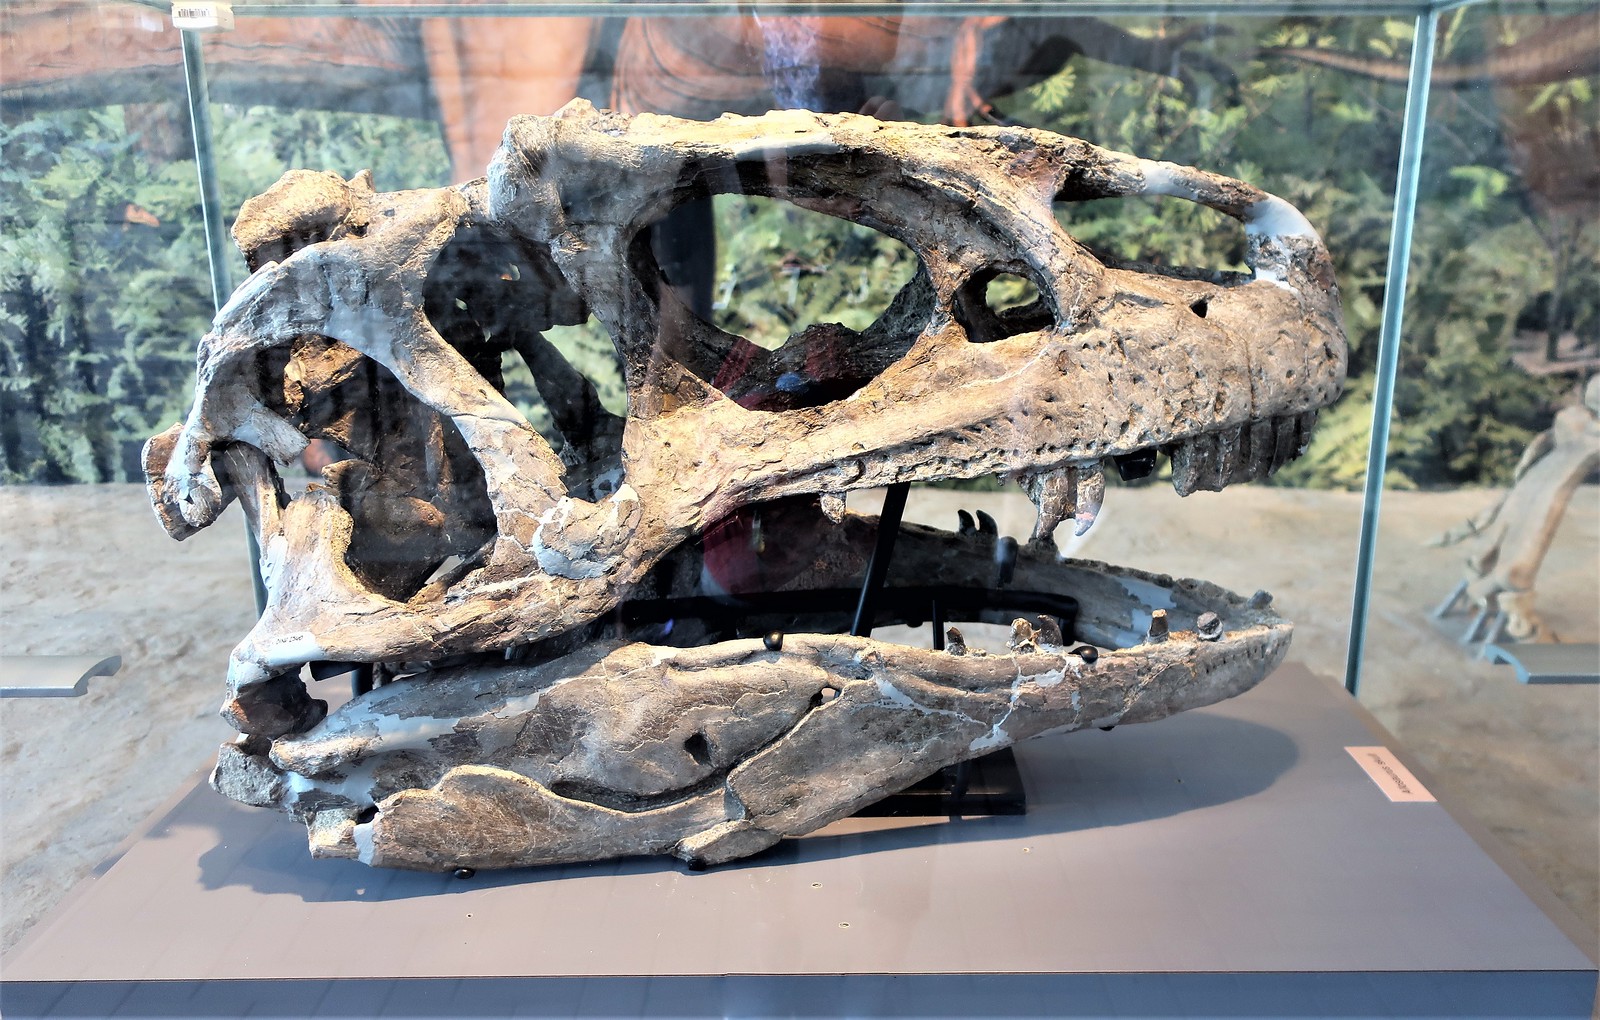 Allosaurus Skull intact & in Shape Dinosaur National Monument Fossil Bone Quarry ~ Jensen, Utah